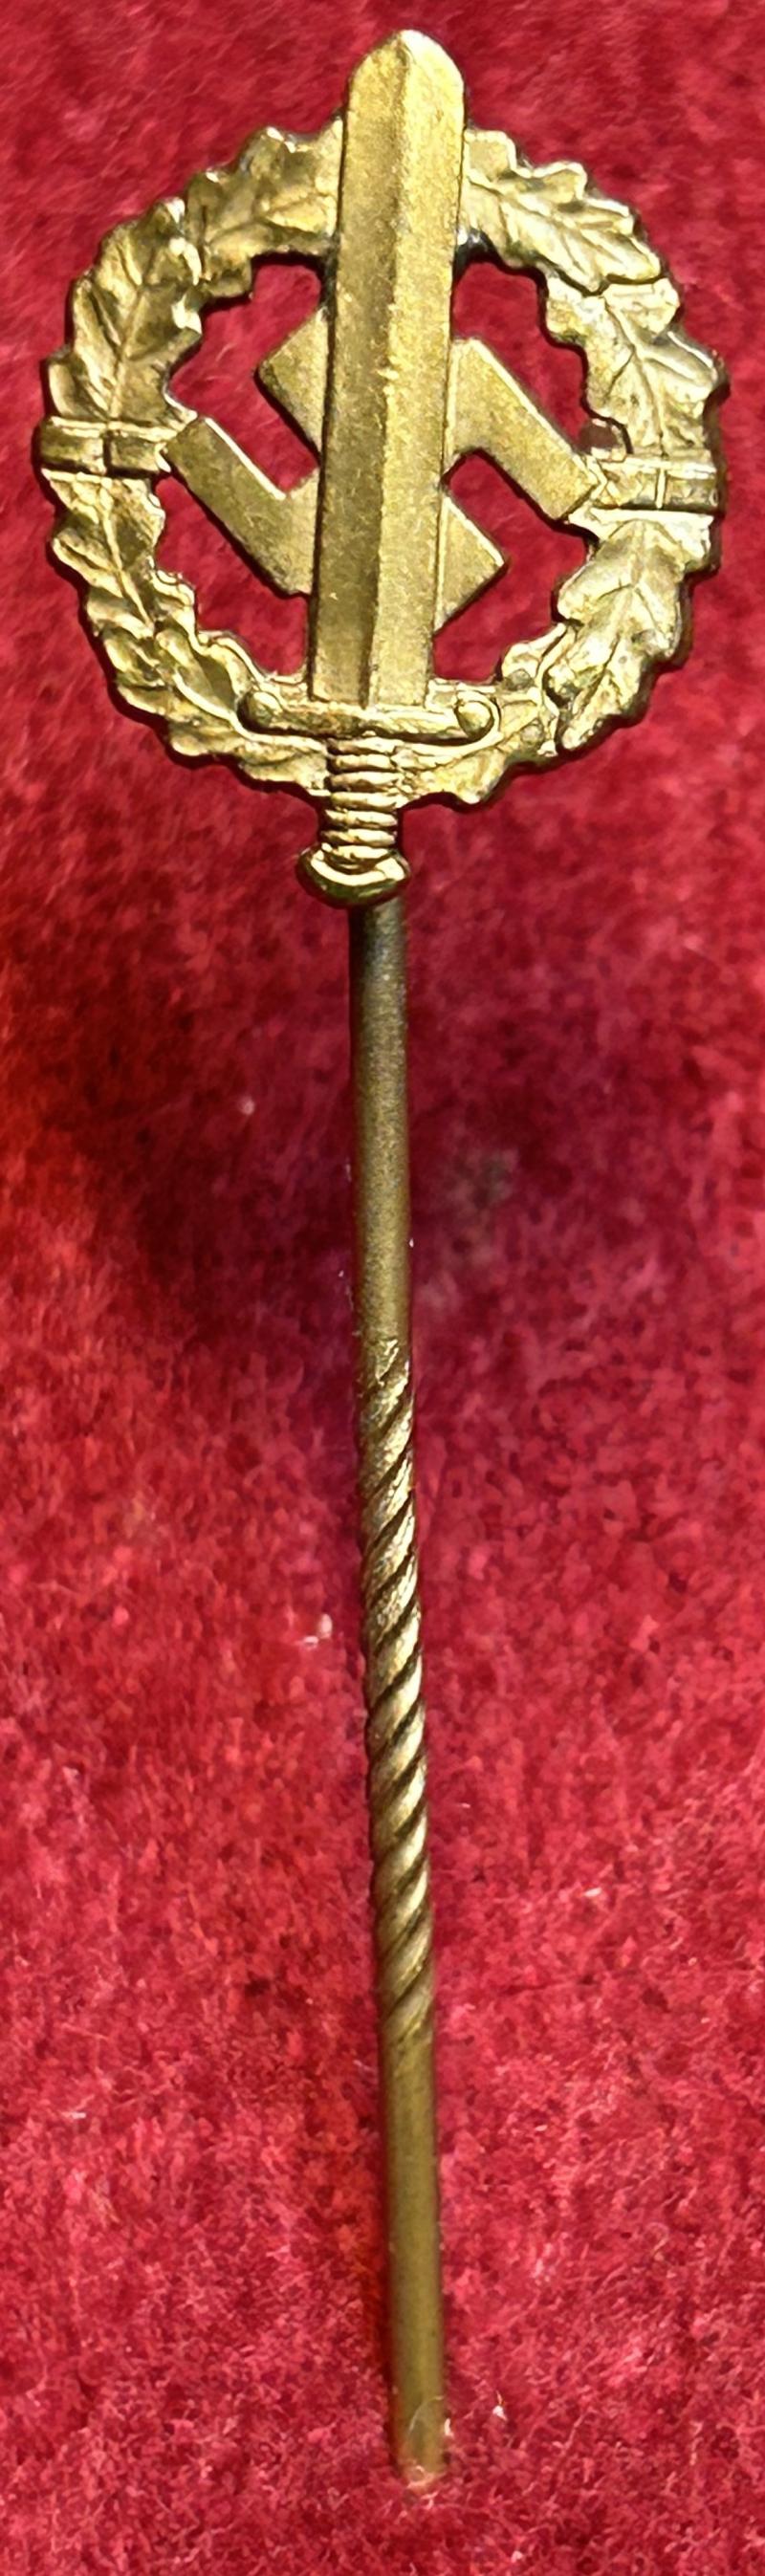 3rd Reich Miniatur SA sportabzeichen in Bronze